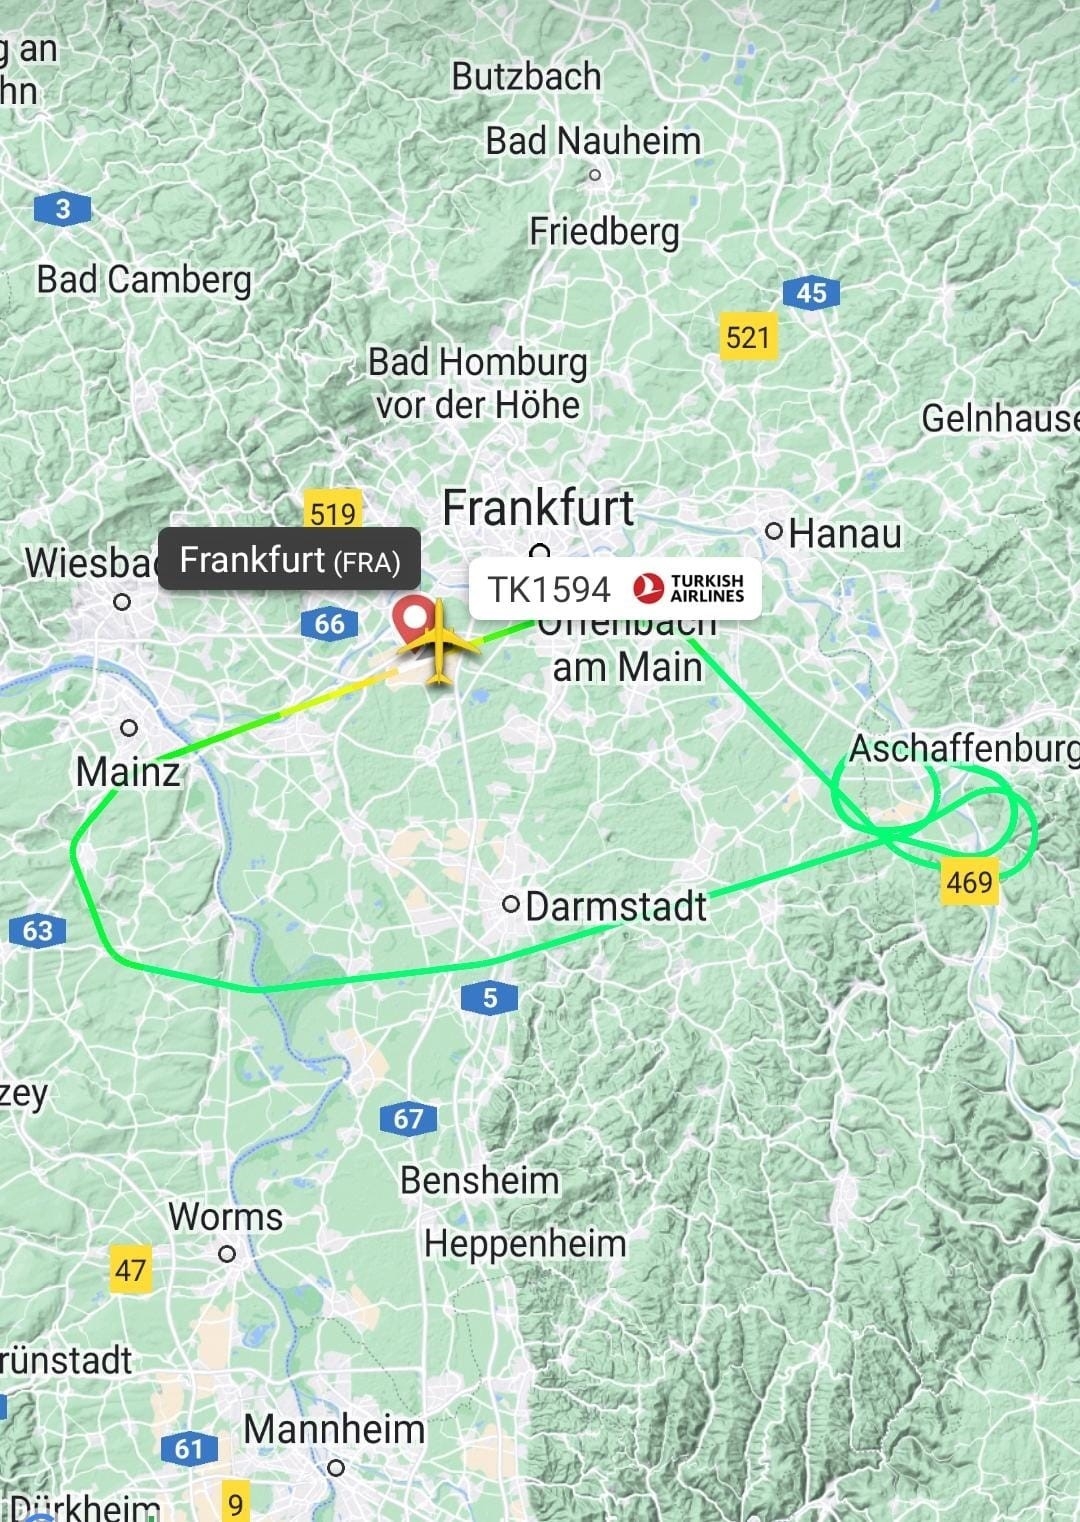 İniş takımları kapanmayan THY uçağı Frankfurt’a geri döndü
